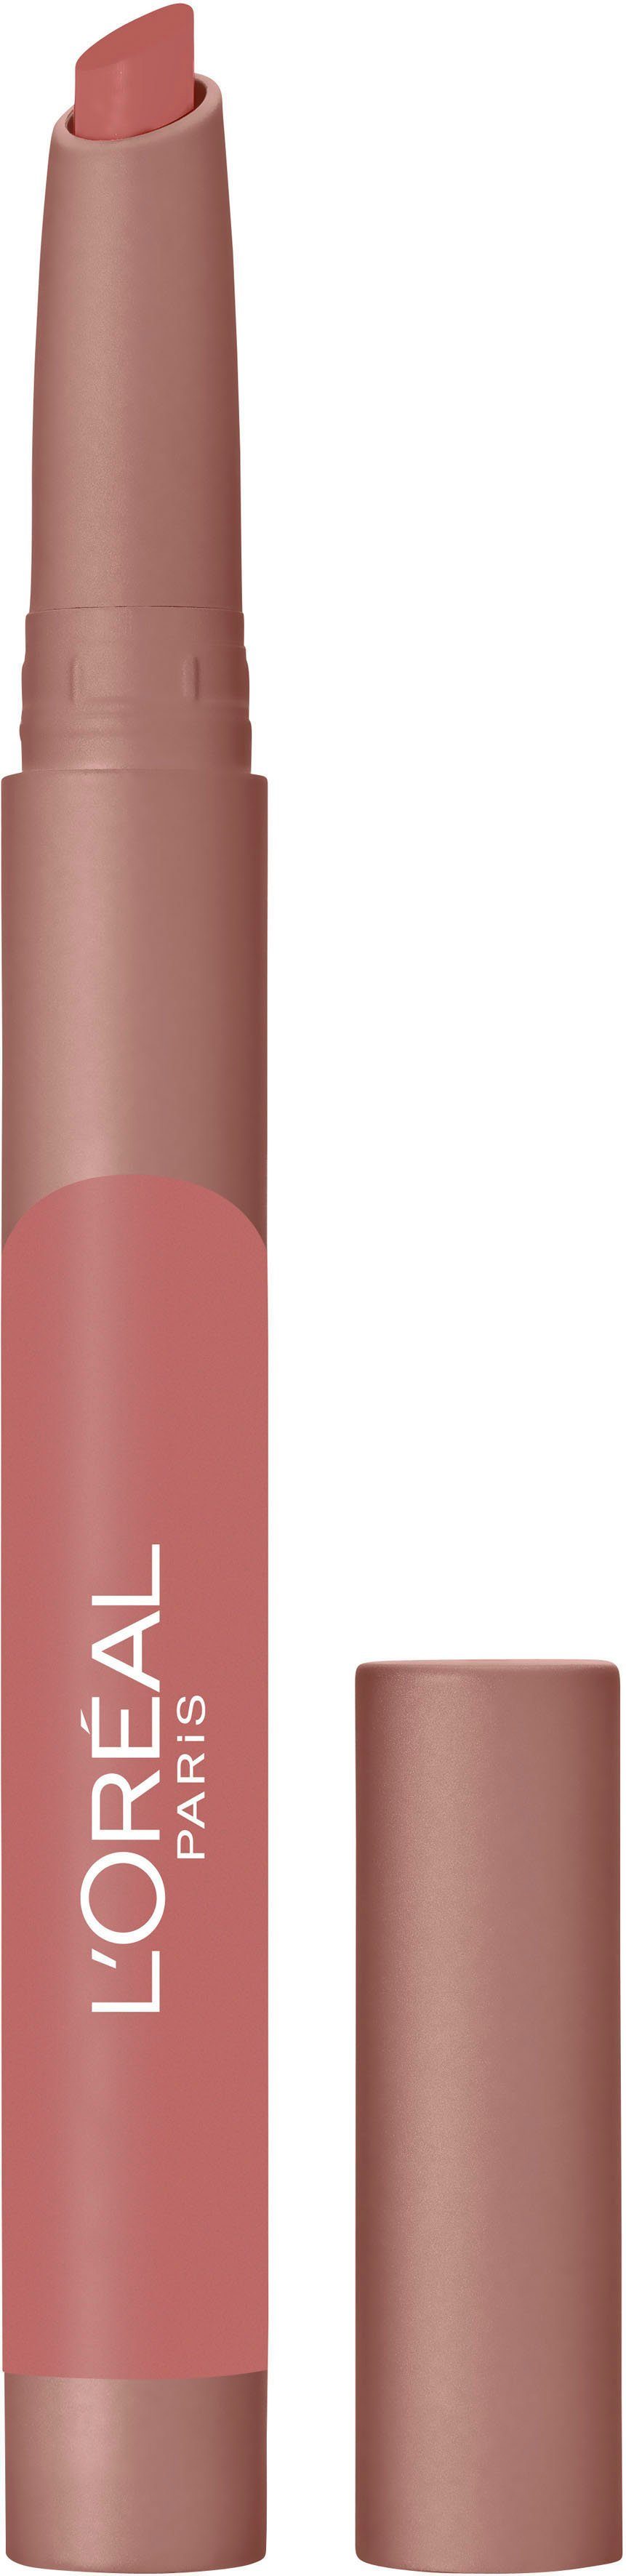 L'ORÉAL PROFESSIONNEL Lip Lippenstift Crayon Blondie Infaillible Caramel 102 PARIS L'ORÉAL PARIS Matte